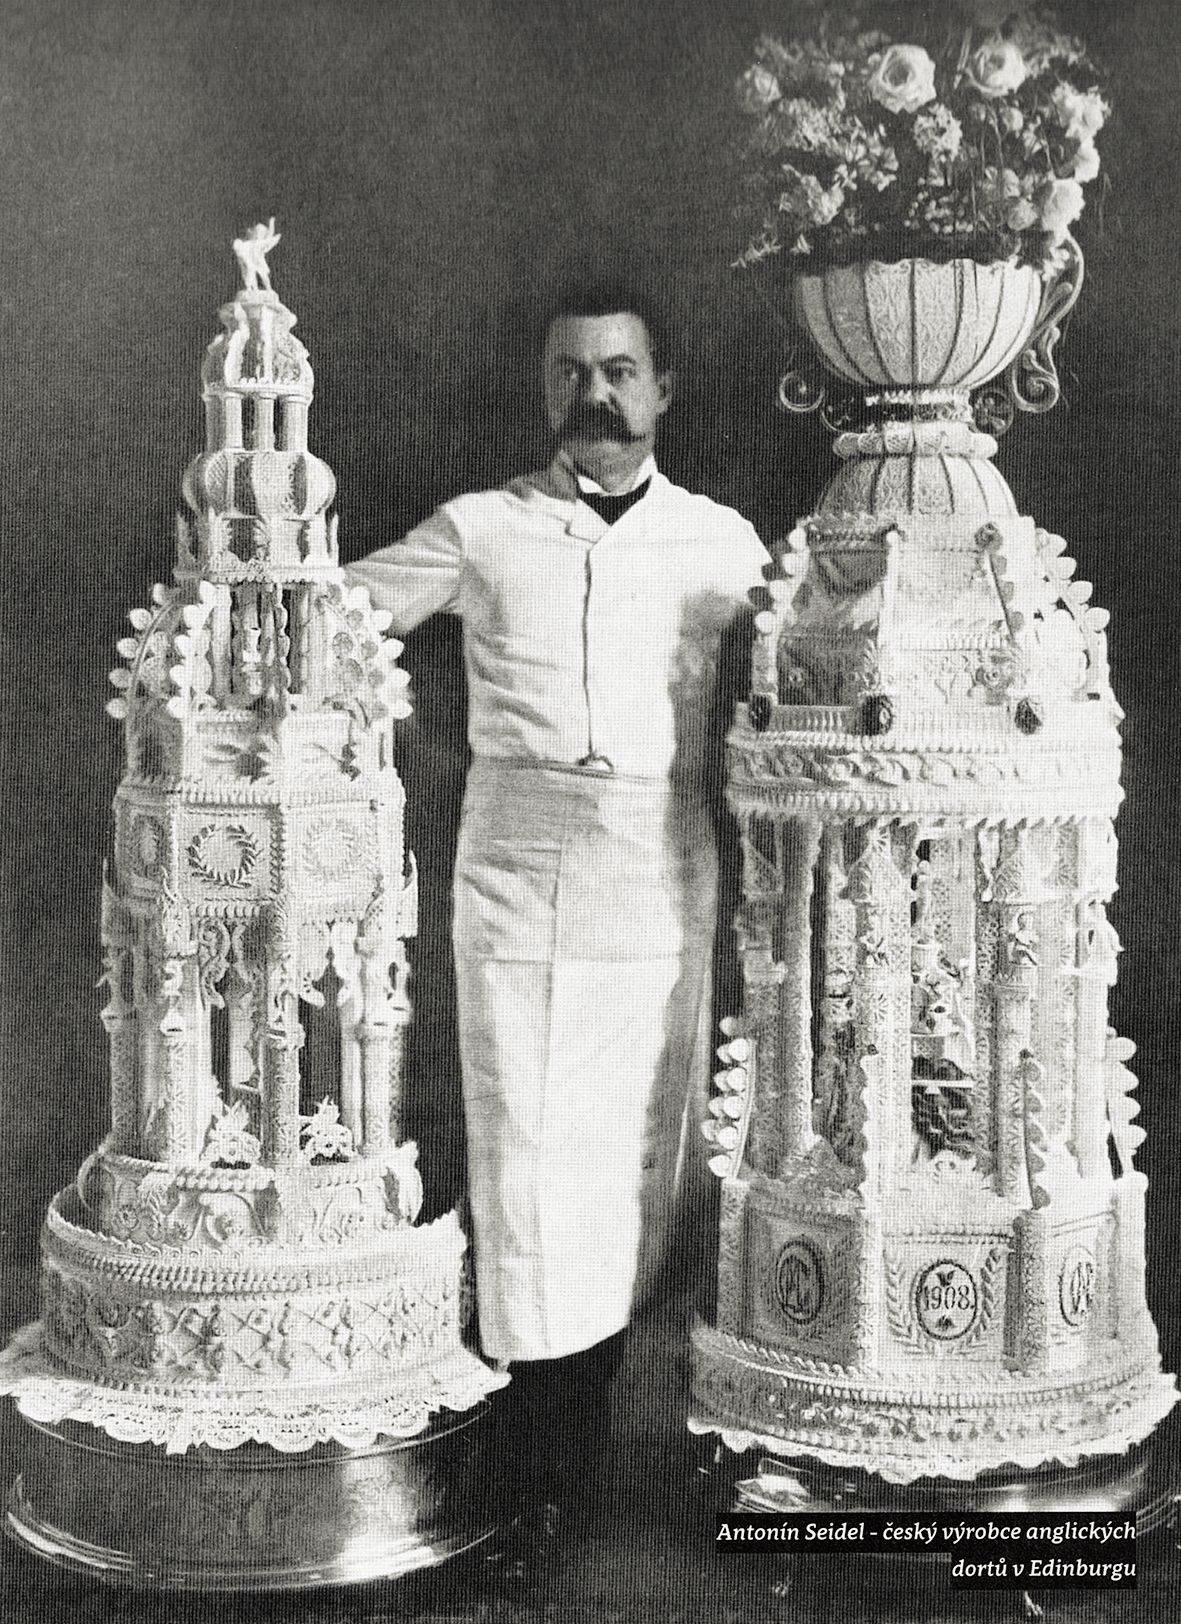 Cukrář Antonín Seidel se svými výrobky – dorty vyráběl i v Edinburghu.